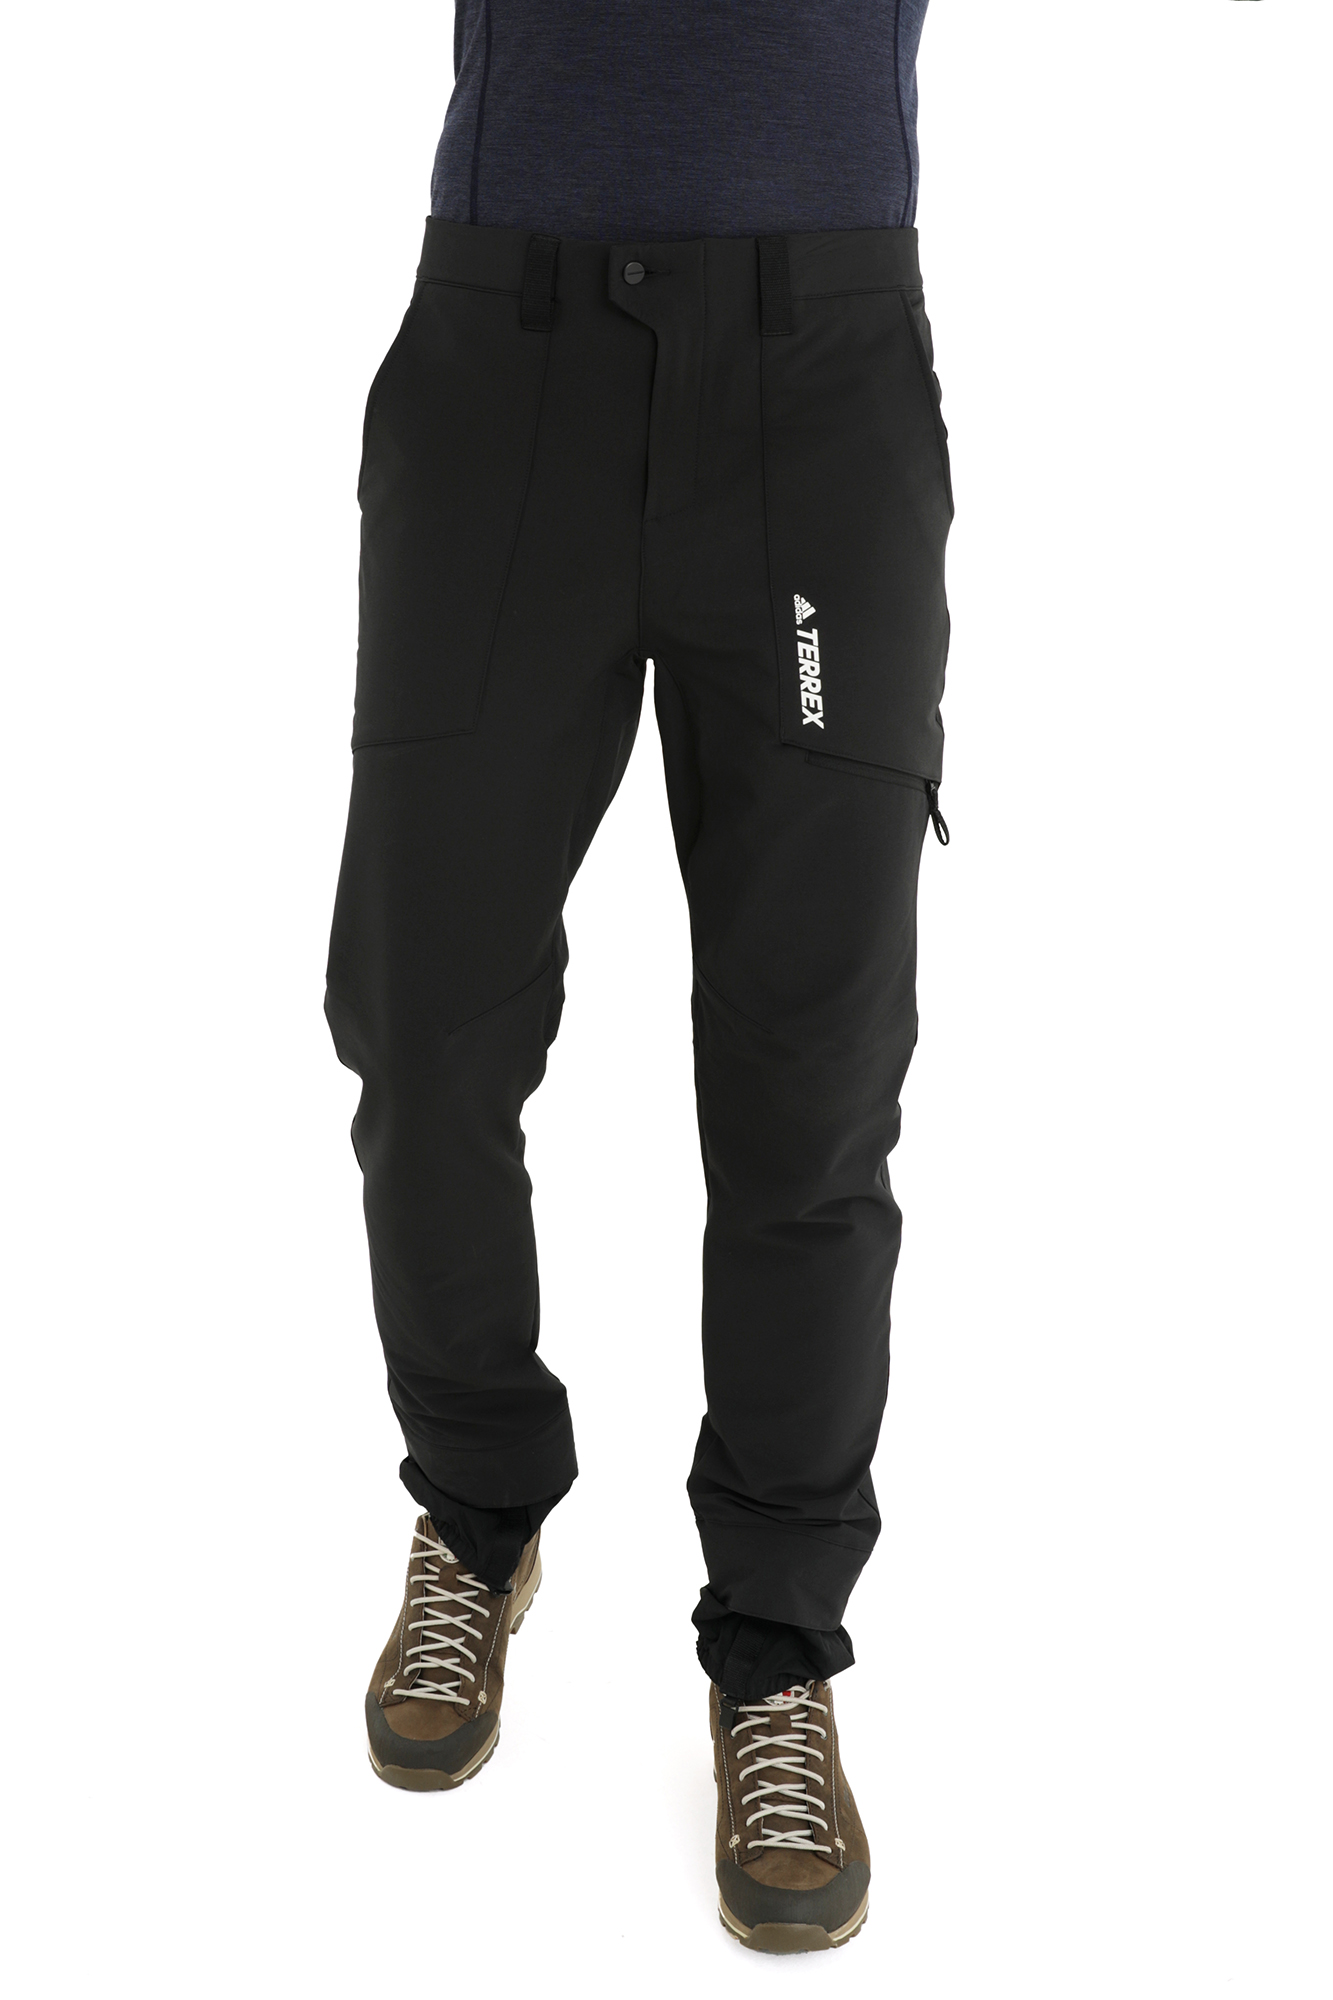 Брюки для активного отдыха Adidas Yearound Ss P Black – купить по цене11999 руб, магазин «Кант»